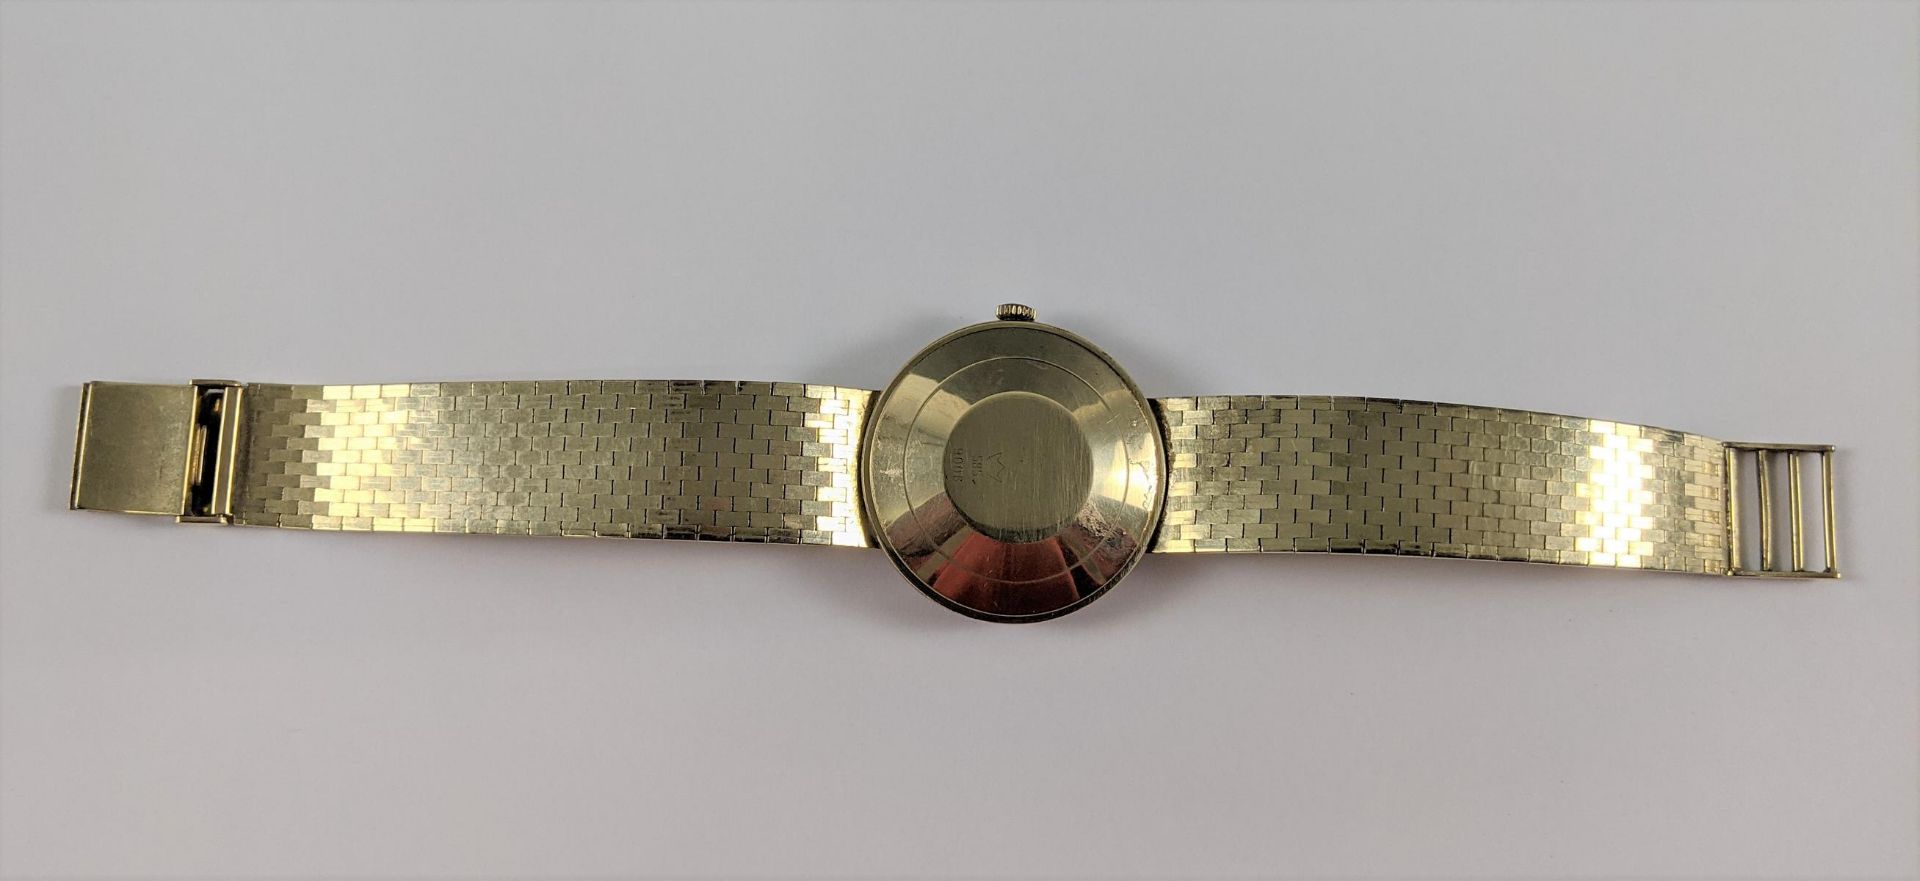 Artos Automatic Herrenarmbanduhr aus den 60er Jahren, 14 Karat Gelbgold - Bild 4 aus 5